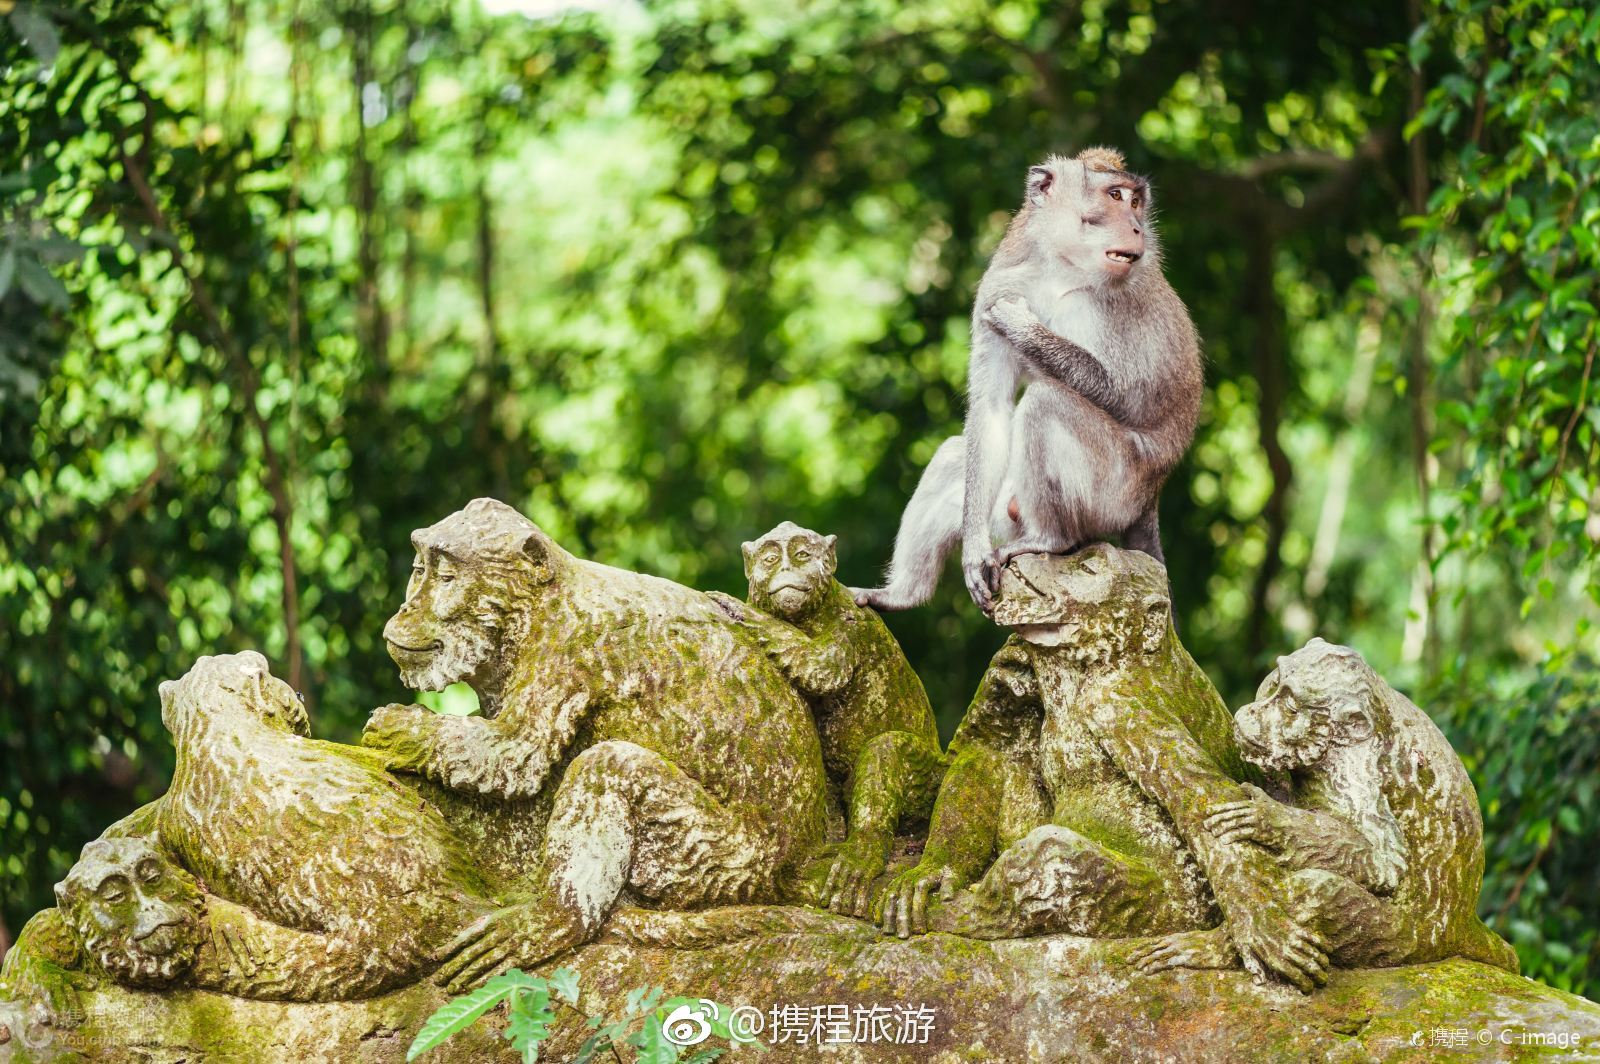 印度尼西亚巴厘岛乌布神圣猴林寺庙屋顶上的猴子。印度尼西亚巴厘岛乌布猴林寺庙屋顶上的猴子风景名胜免费下载_jpg格式_2656像素_编号 ...